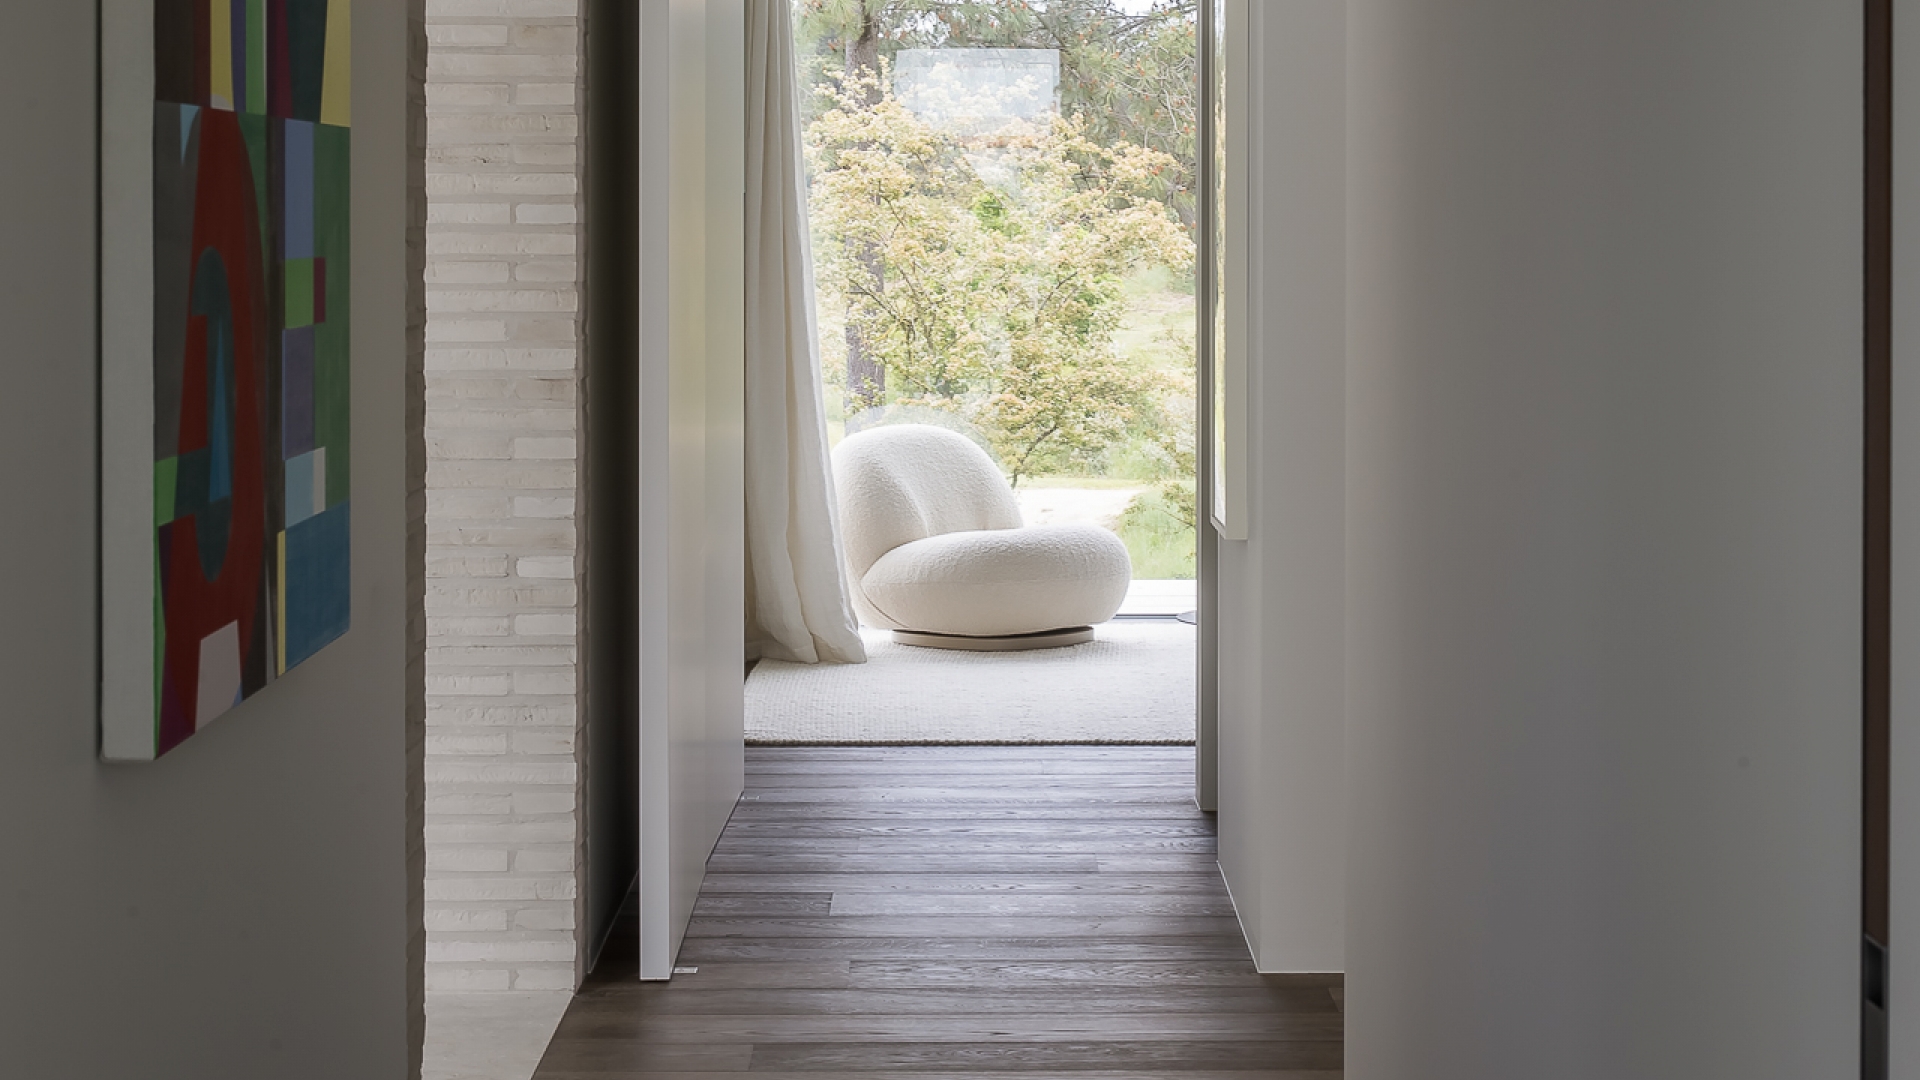 Villa HB interior architecture by Eline Ostyn furniture